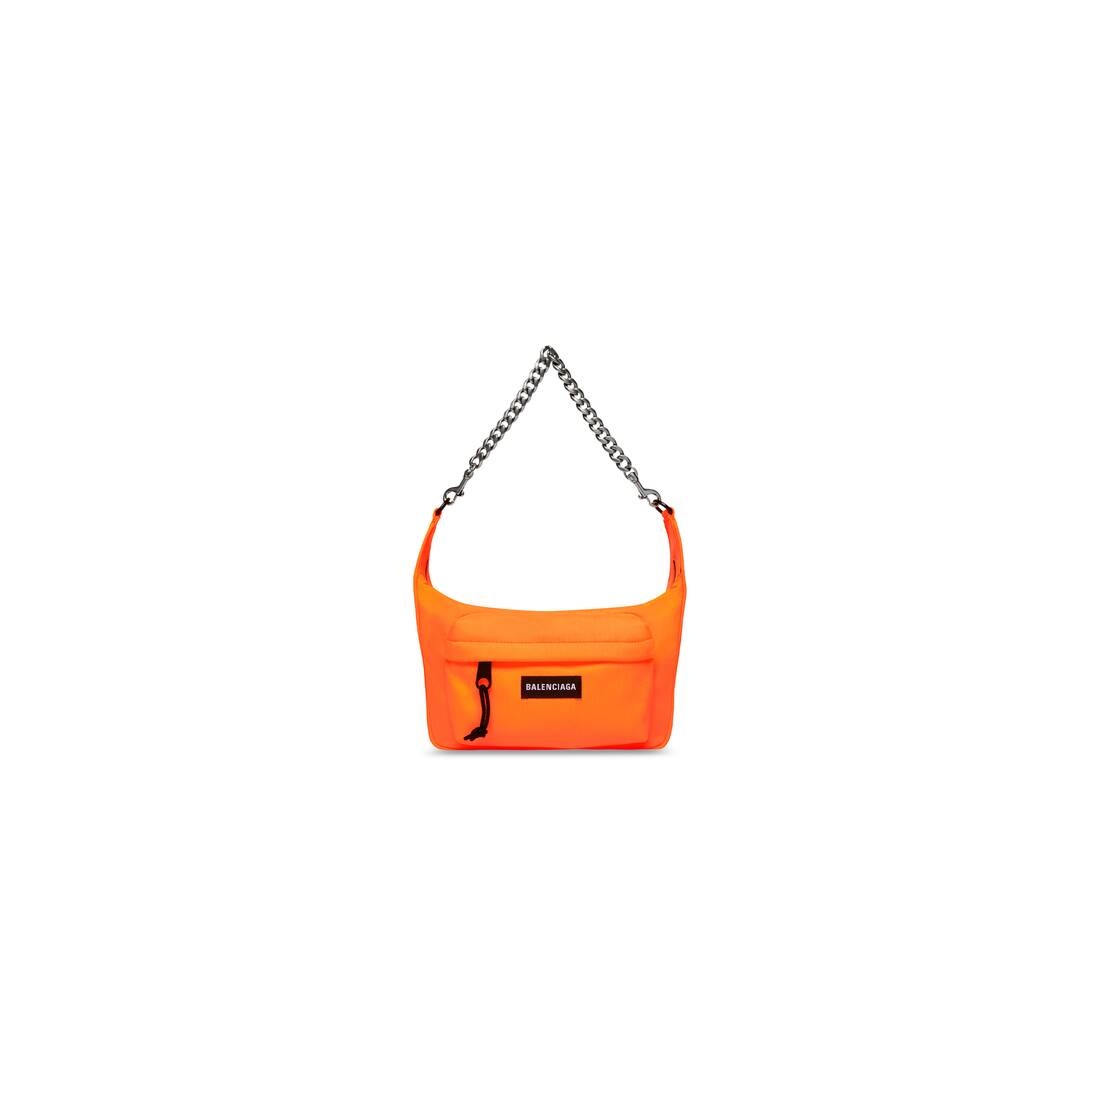 Raver Medium Bag With Chain in Fluo Orange - 1